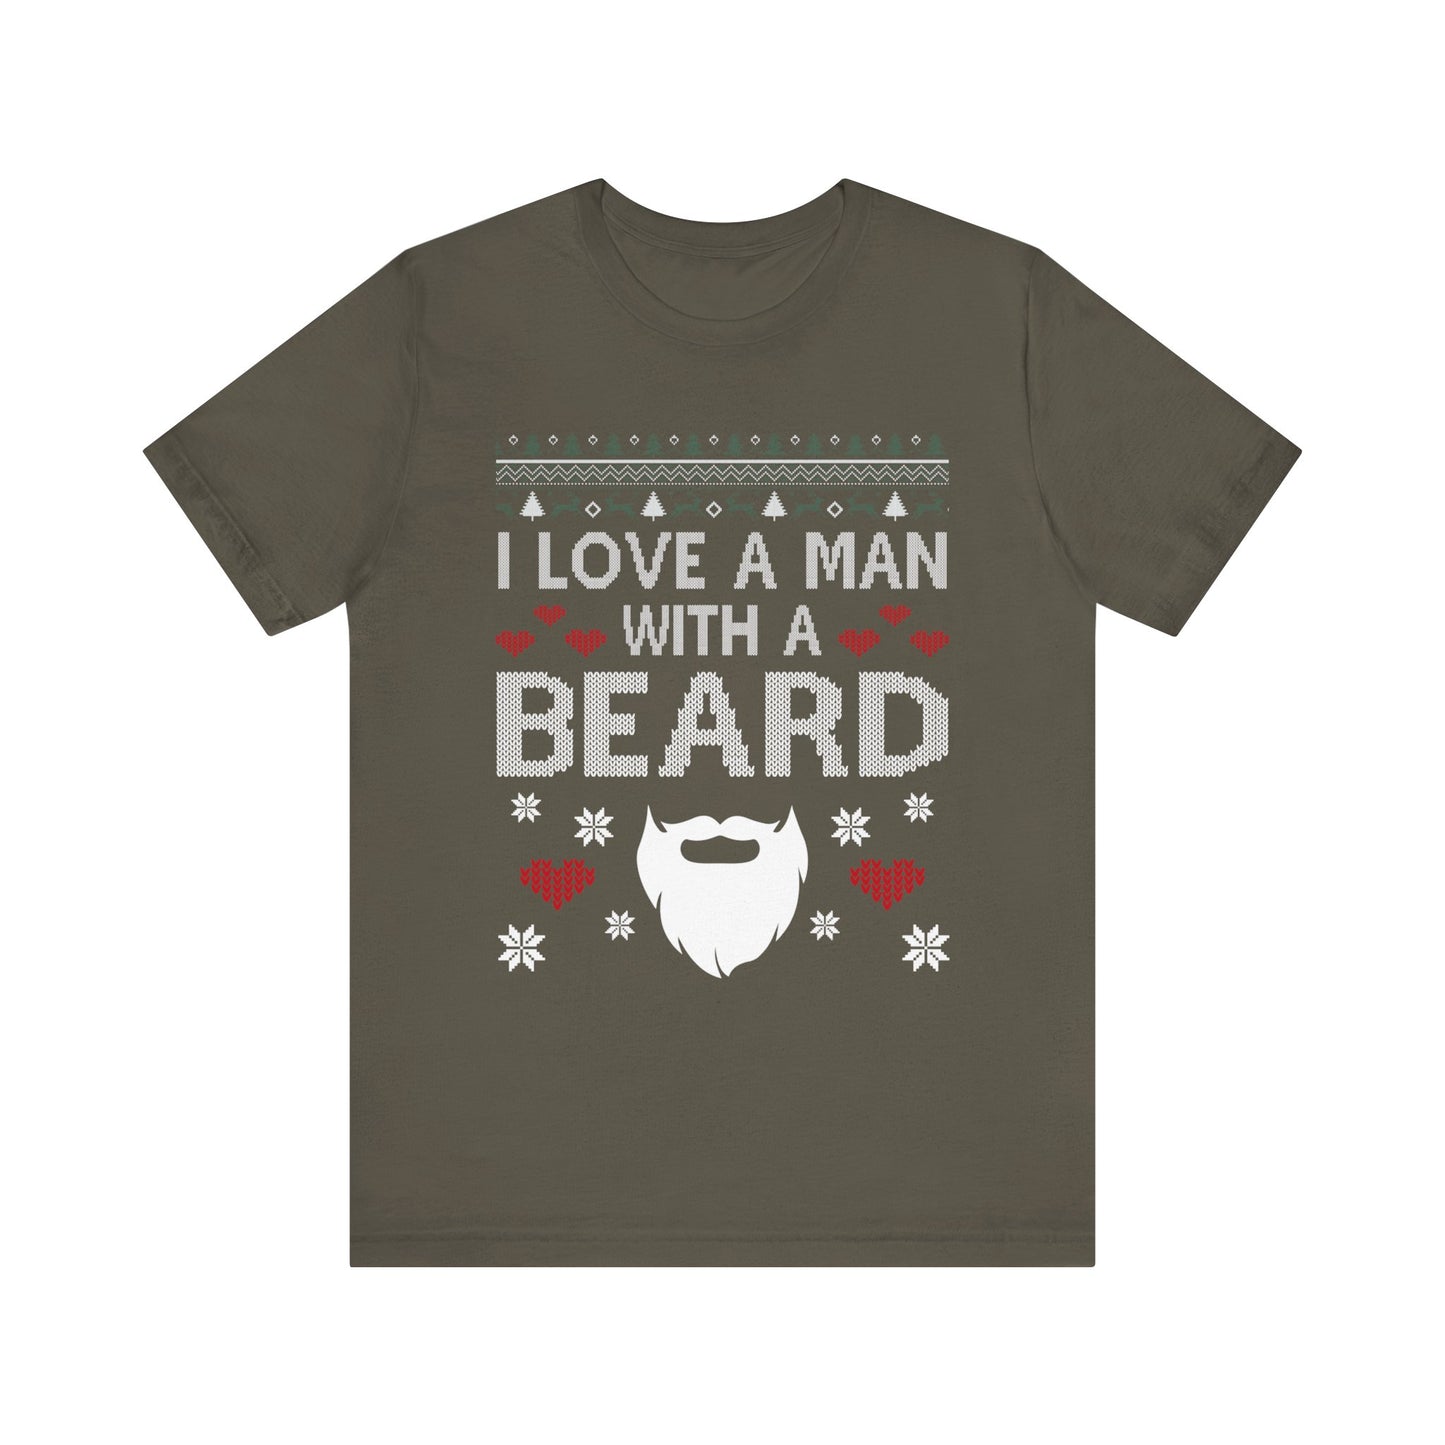 I Love a Man with a Beard